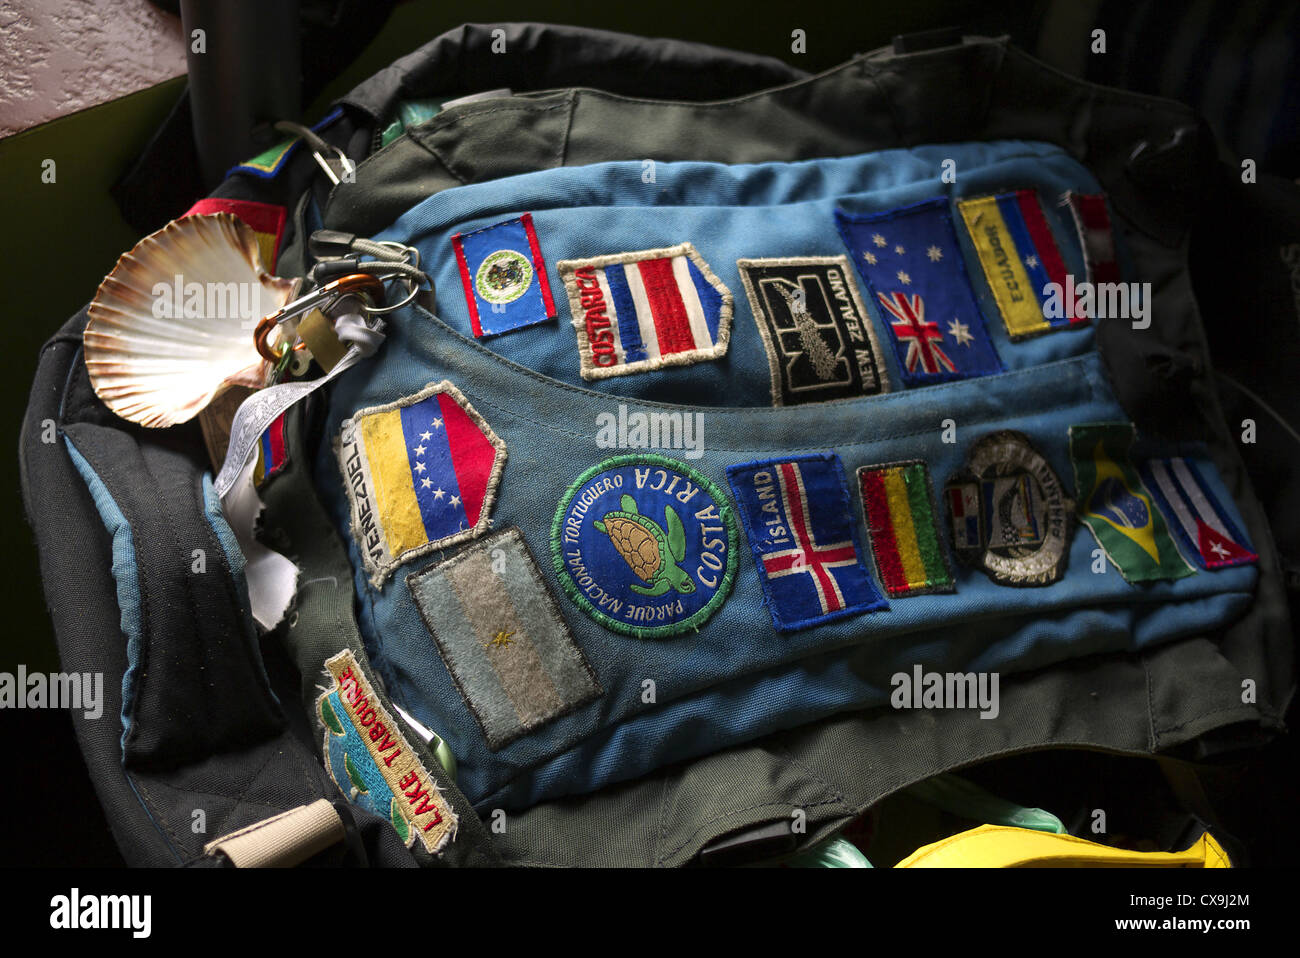 Camino Jakobsmuschel befestigt um einen weit gereisten Rucksack mit  Abzeichen verziert Stockfotografie - Alamy